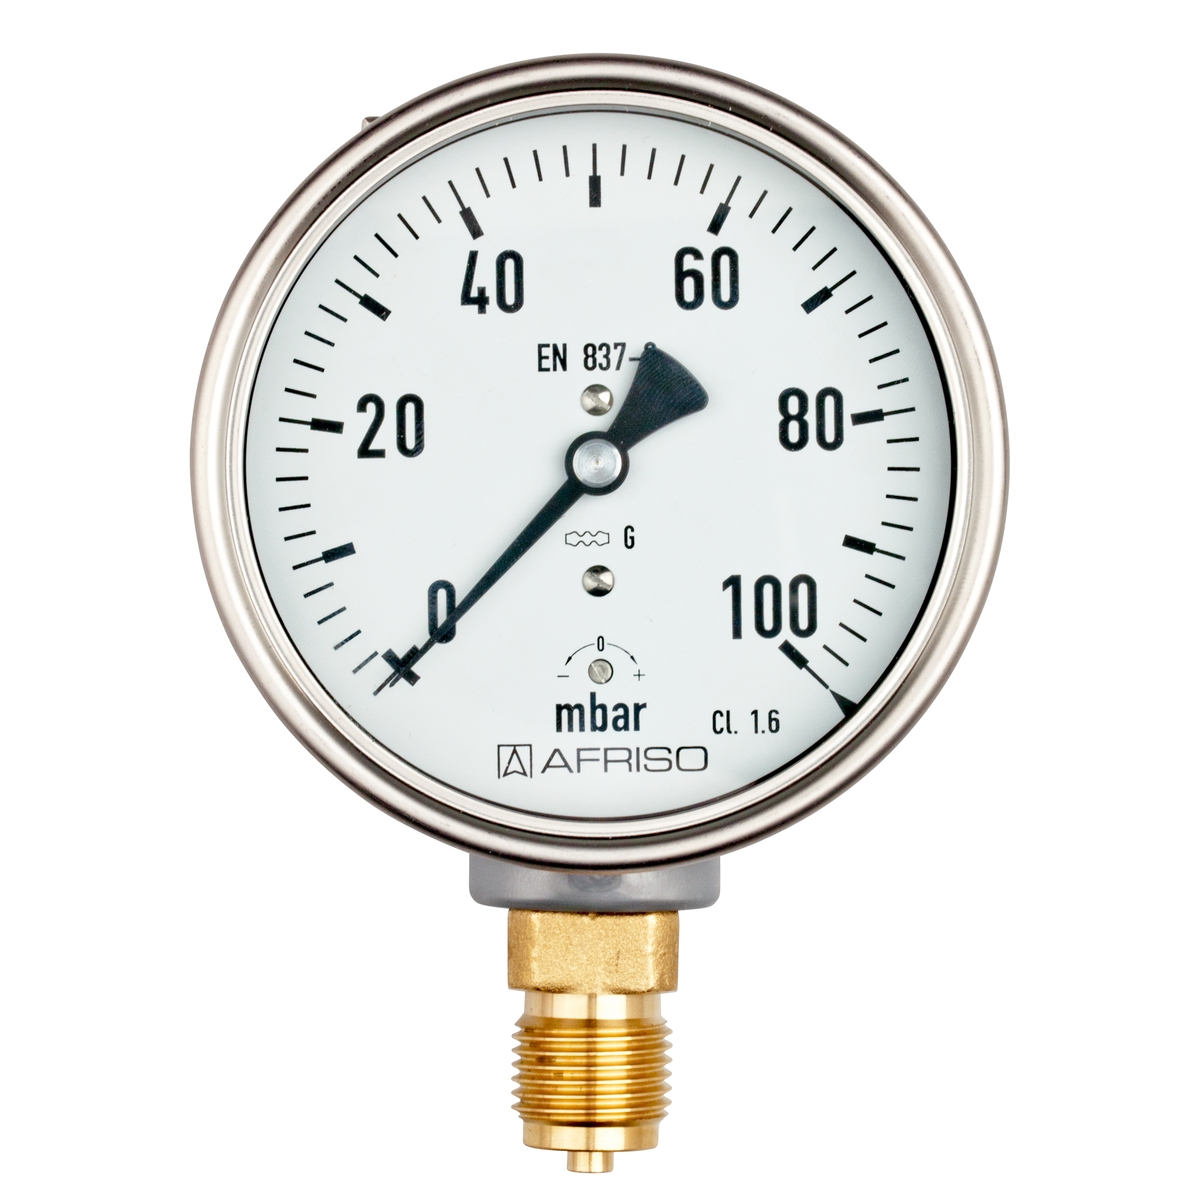 Manometr KP 100 pro plynná média, nerezový, Ø 100 mm, 0 ÷ 40 mbar, G½", radiální, typ D4 - AFRISO.CZ